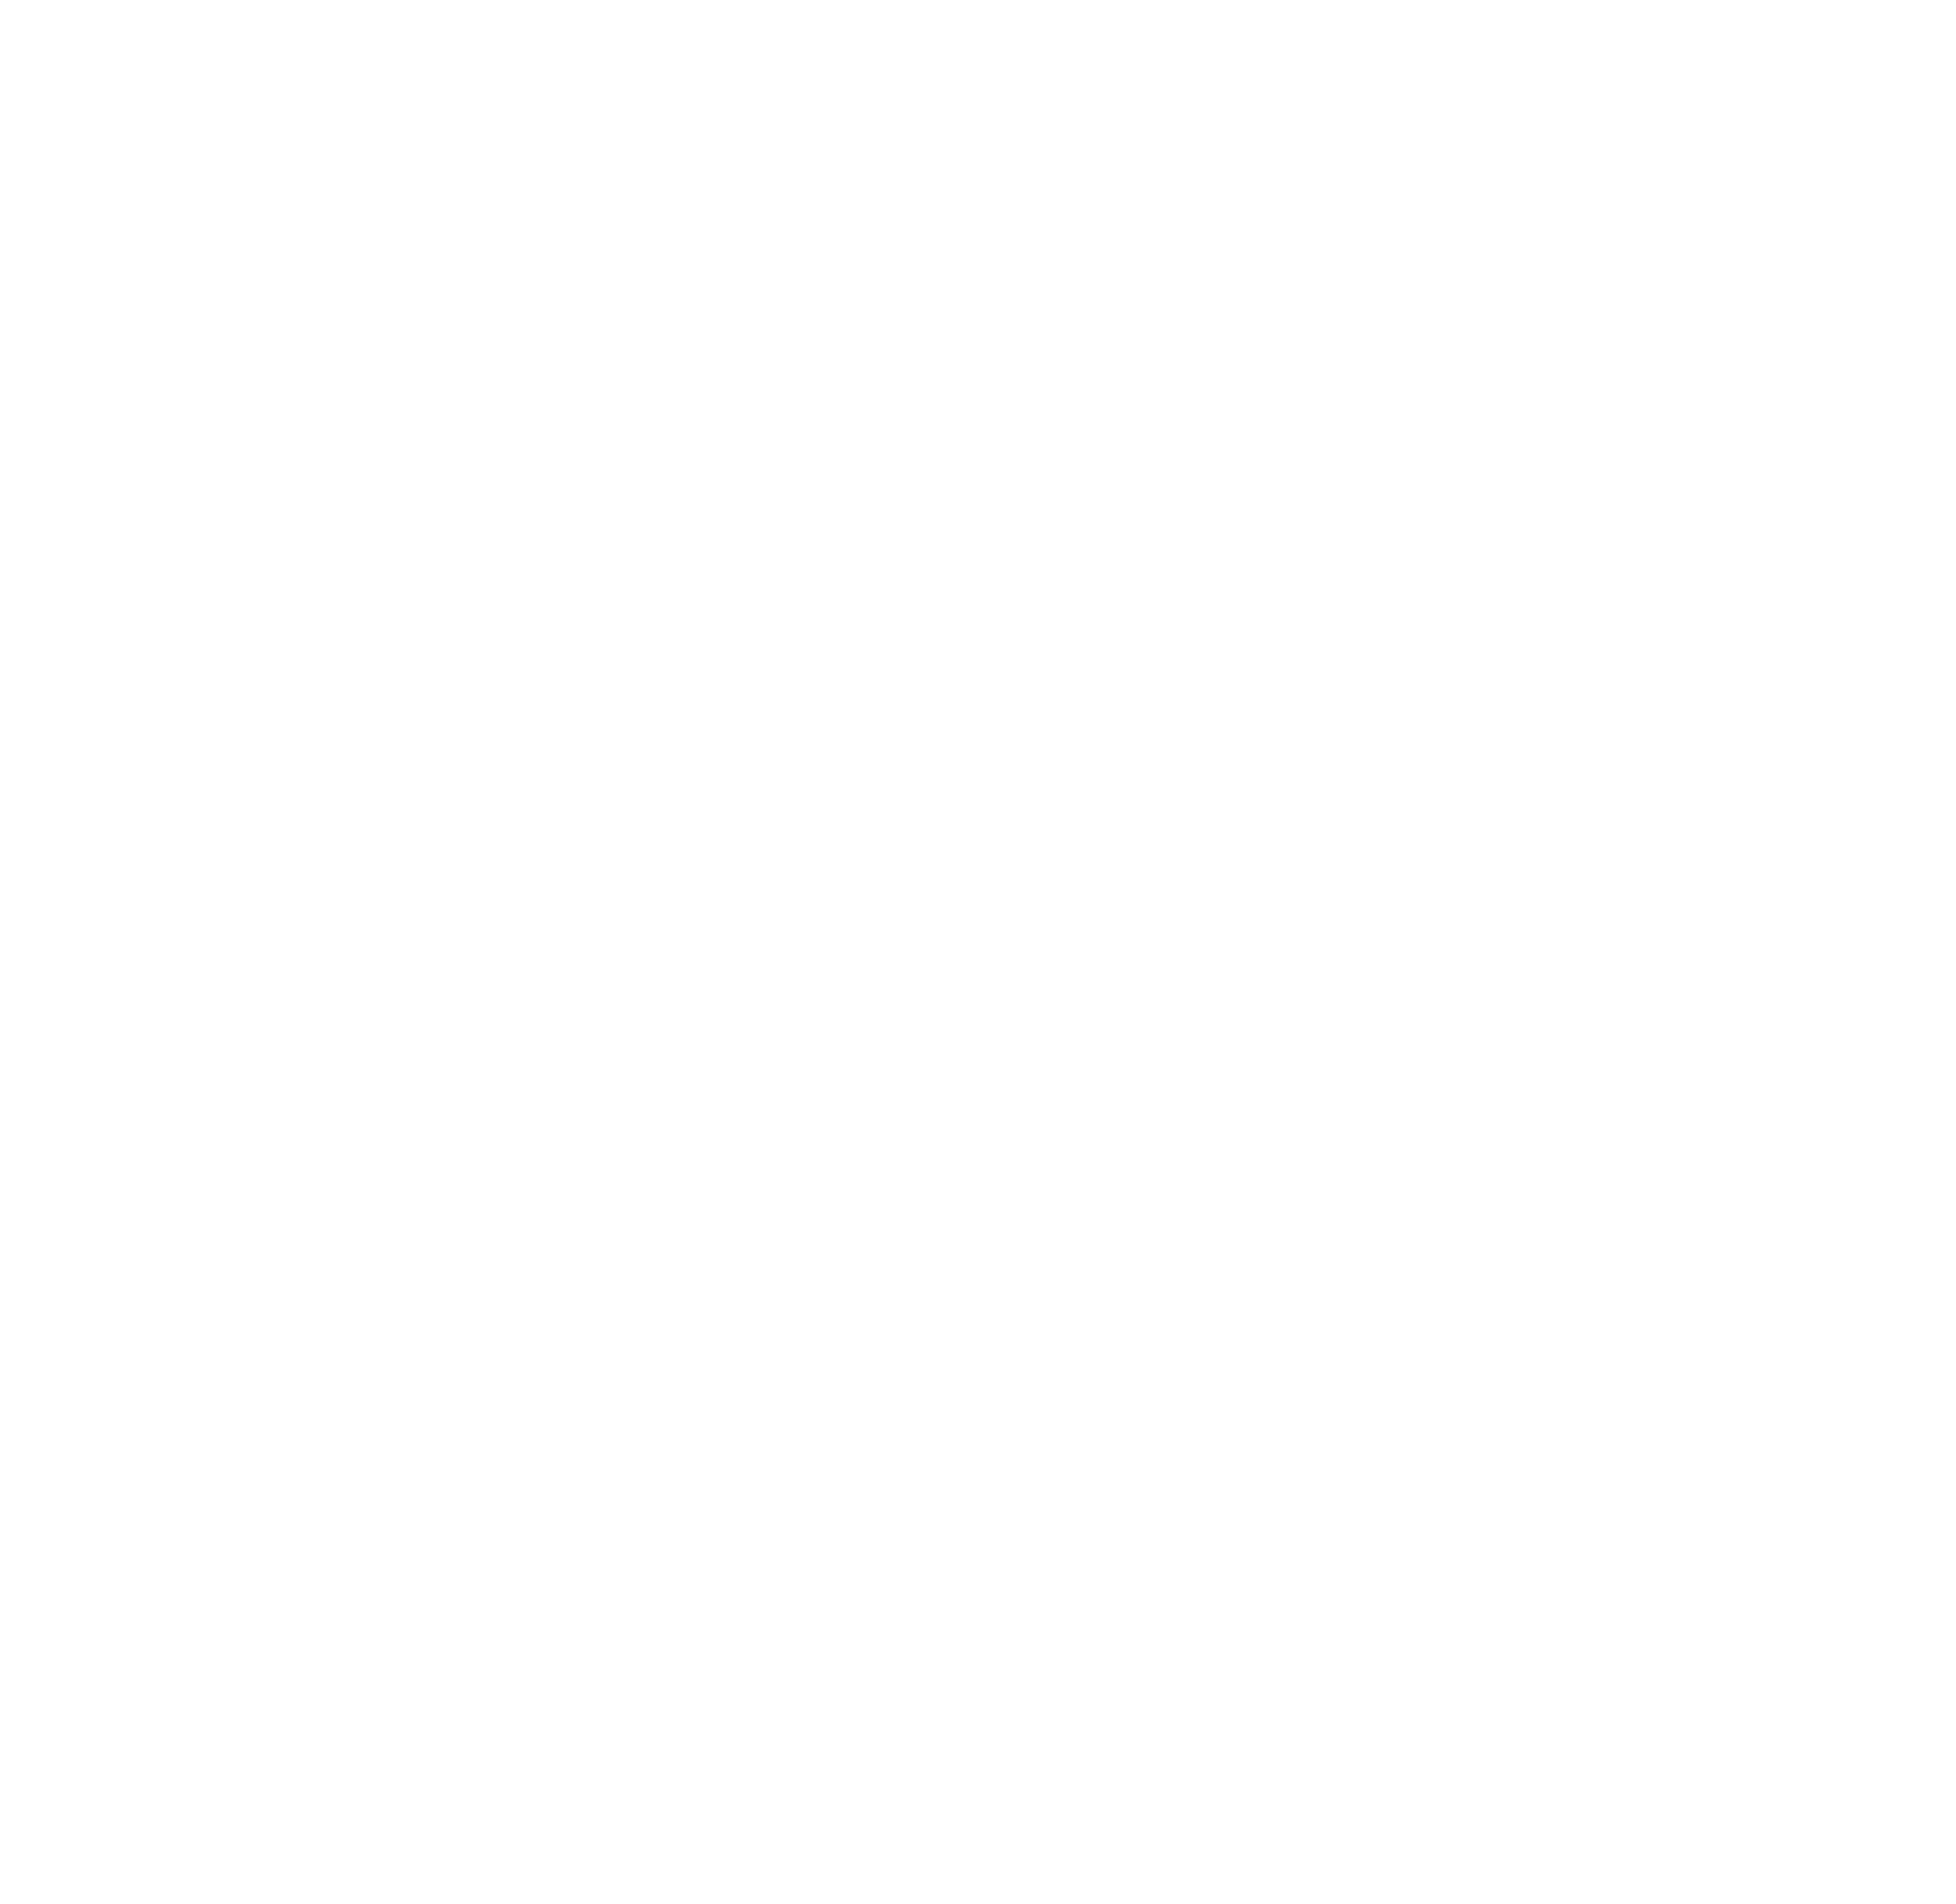 Silver Birch Golf Club